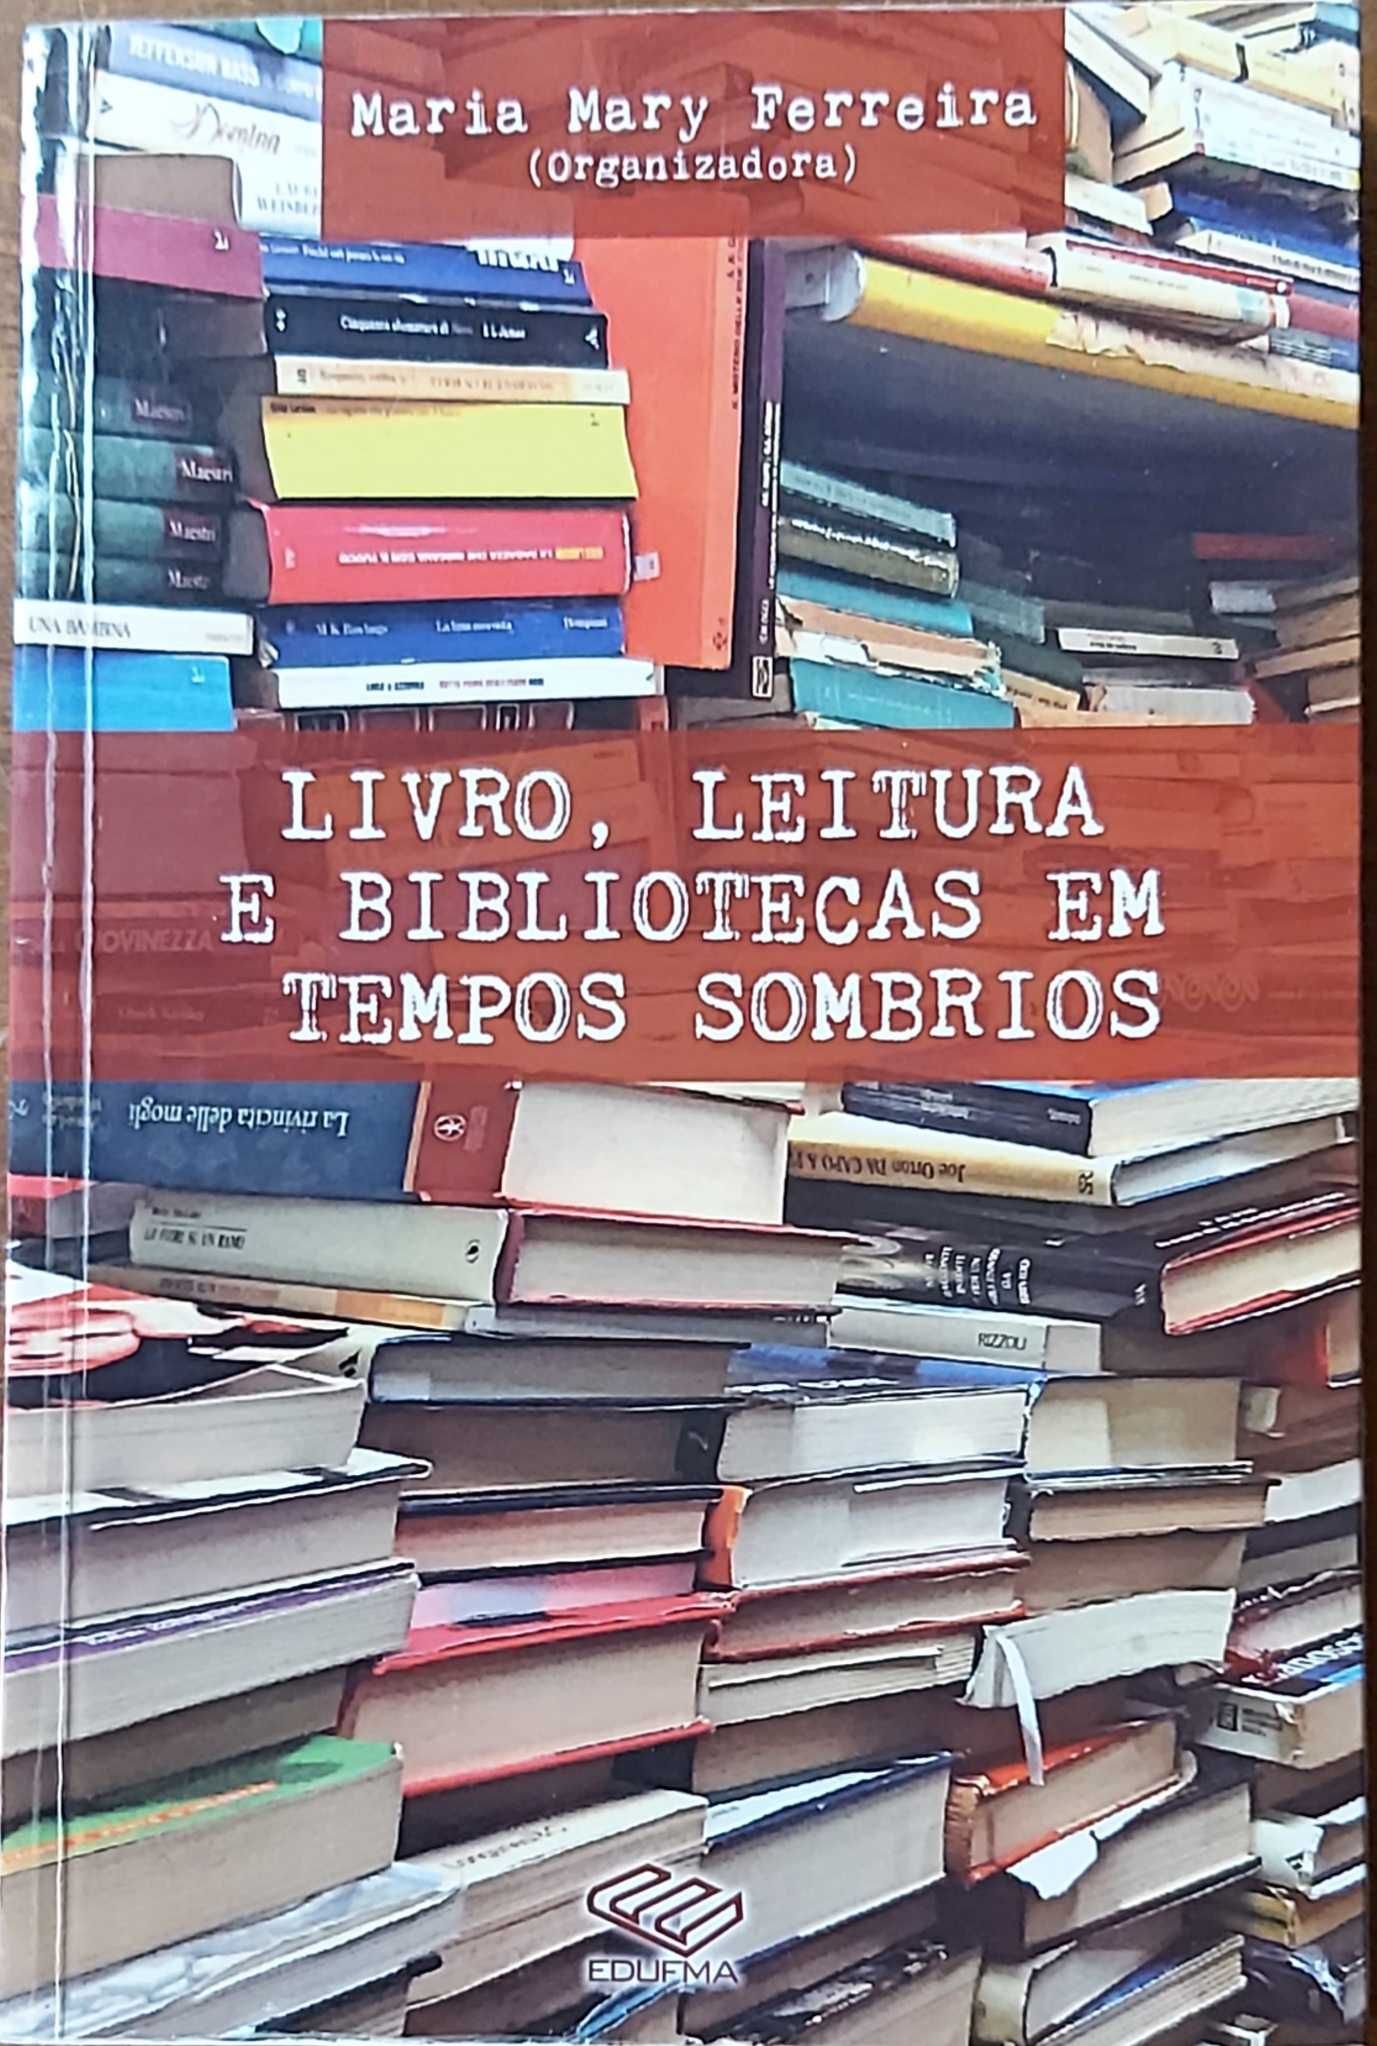 Livro Ref Par 2 - Maria Mary Ferreira - Livro, Leitura...